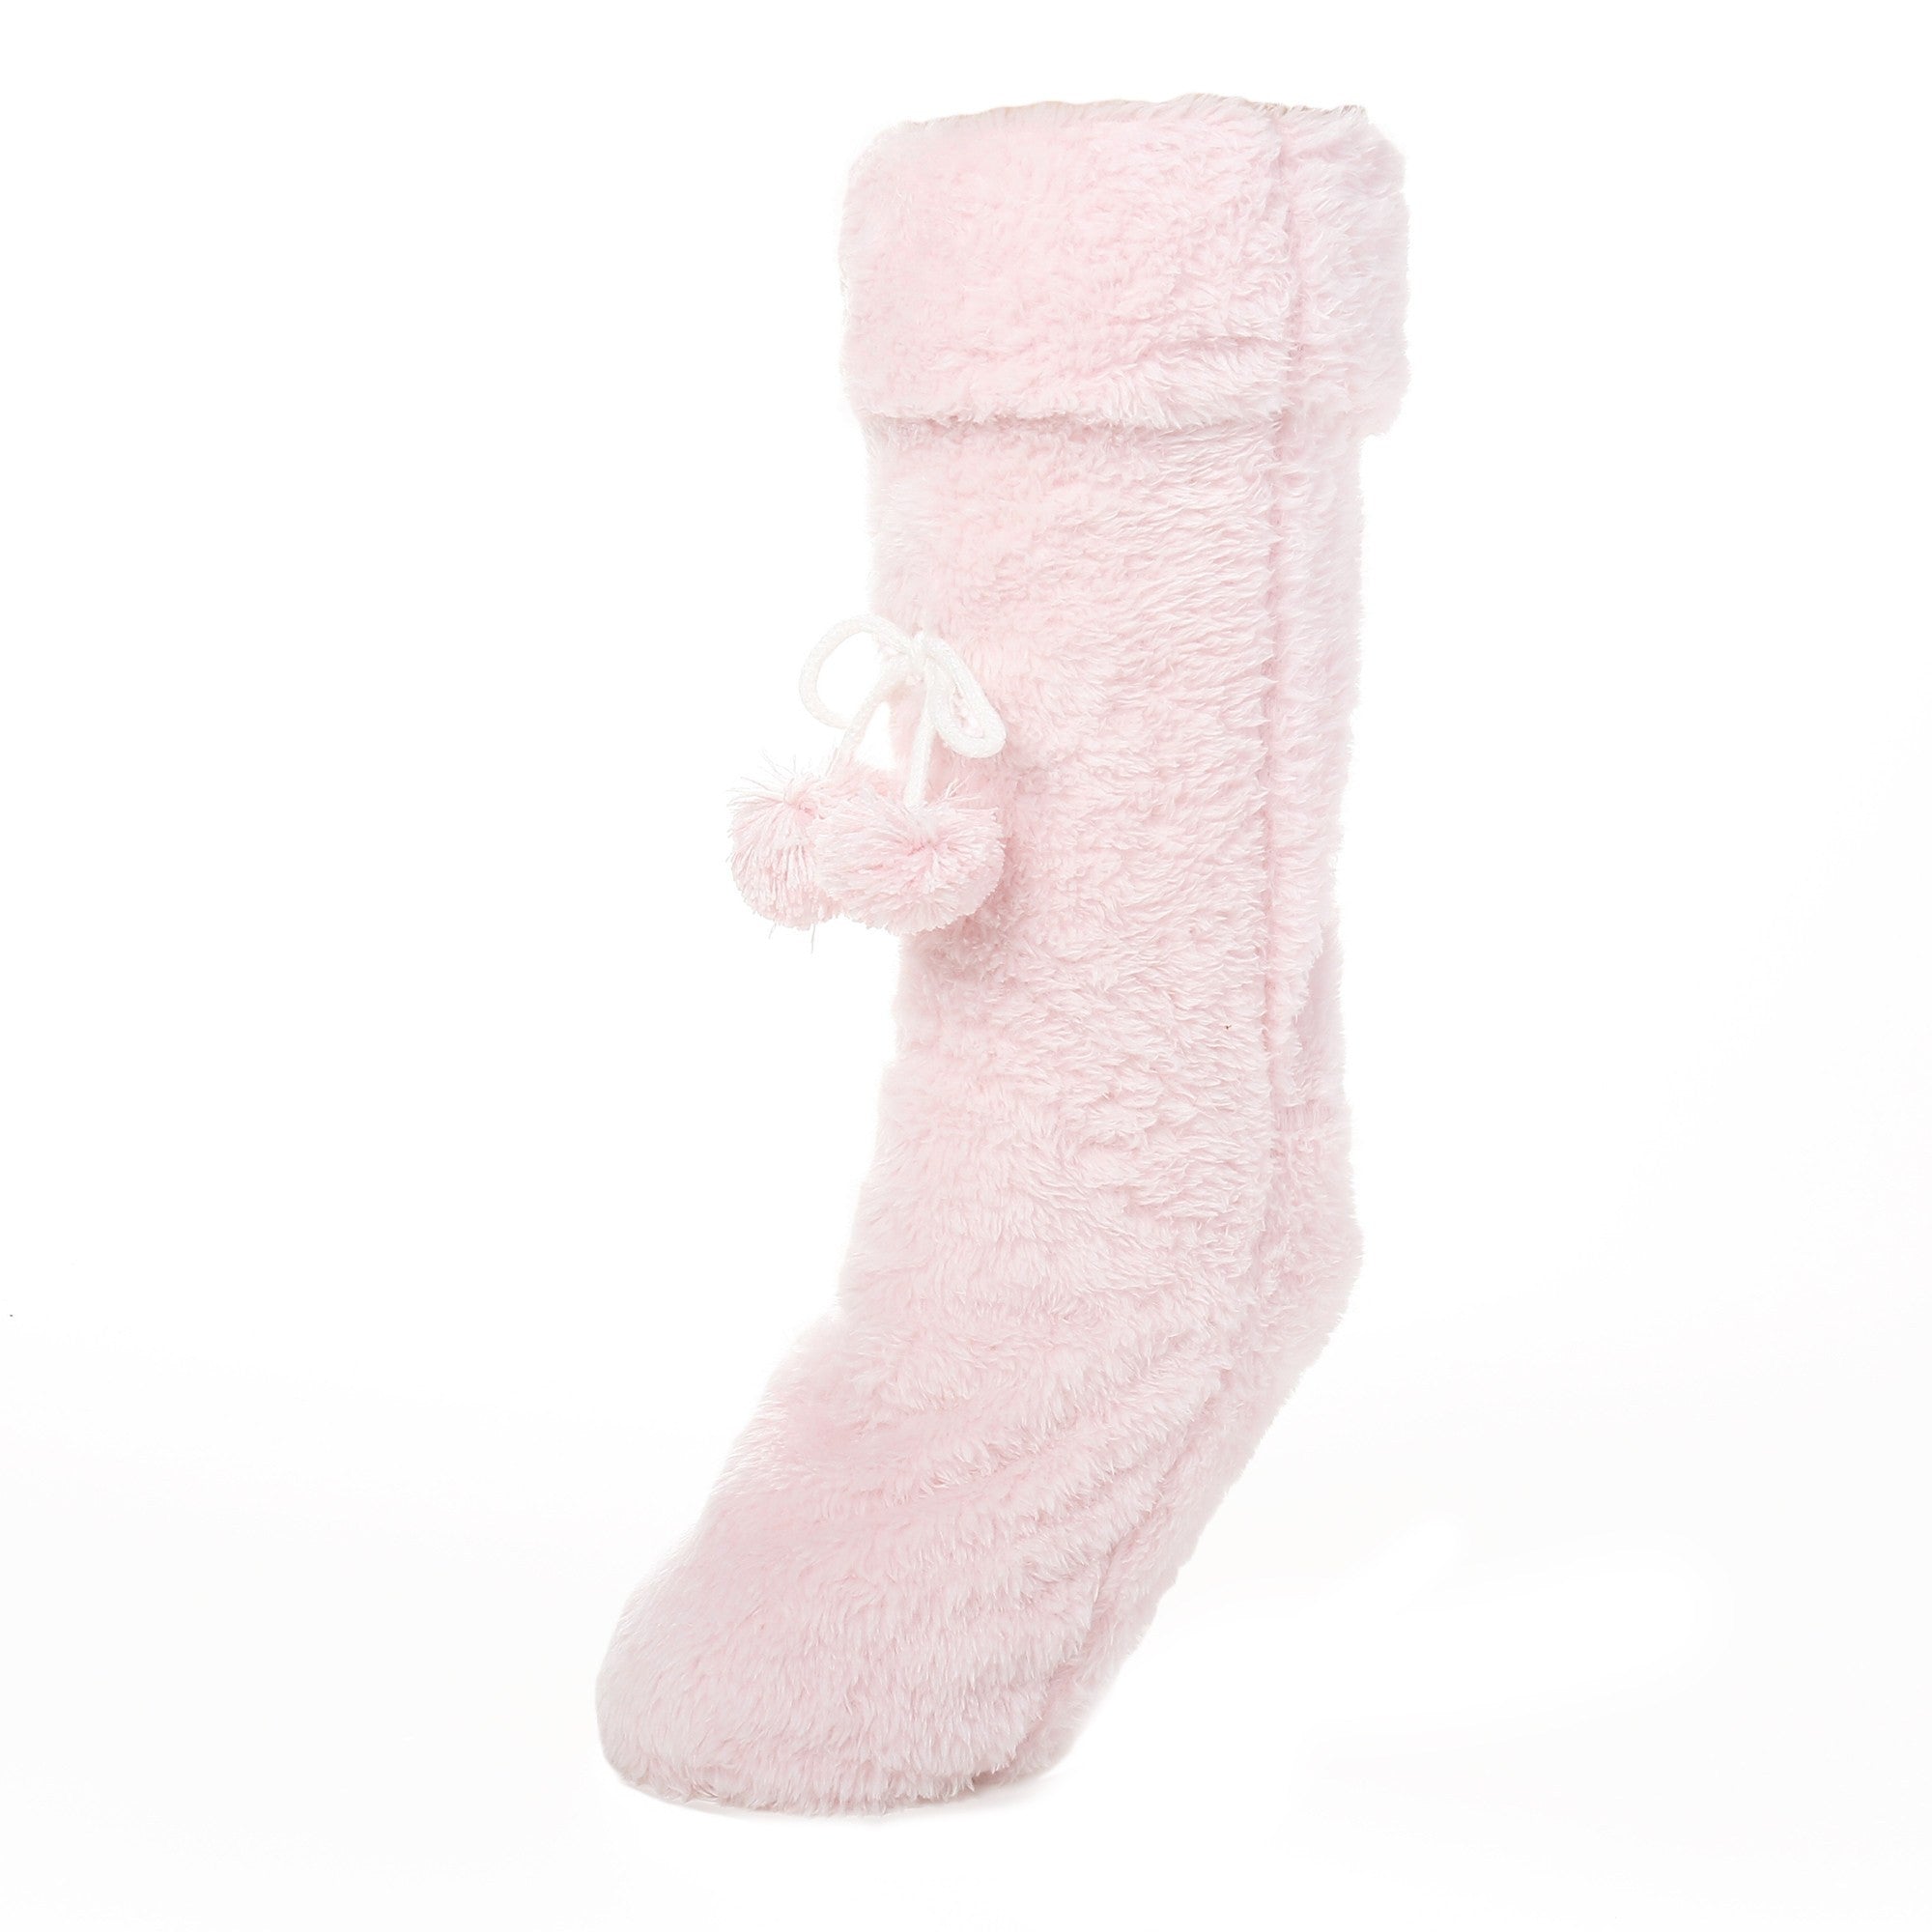 Women's Fuzzy Plush Tall Slipper Socks with Pom-Poms